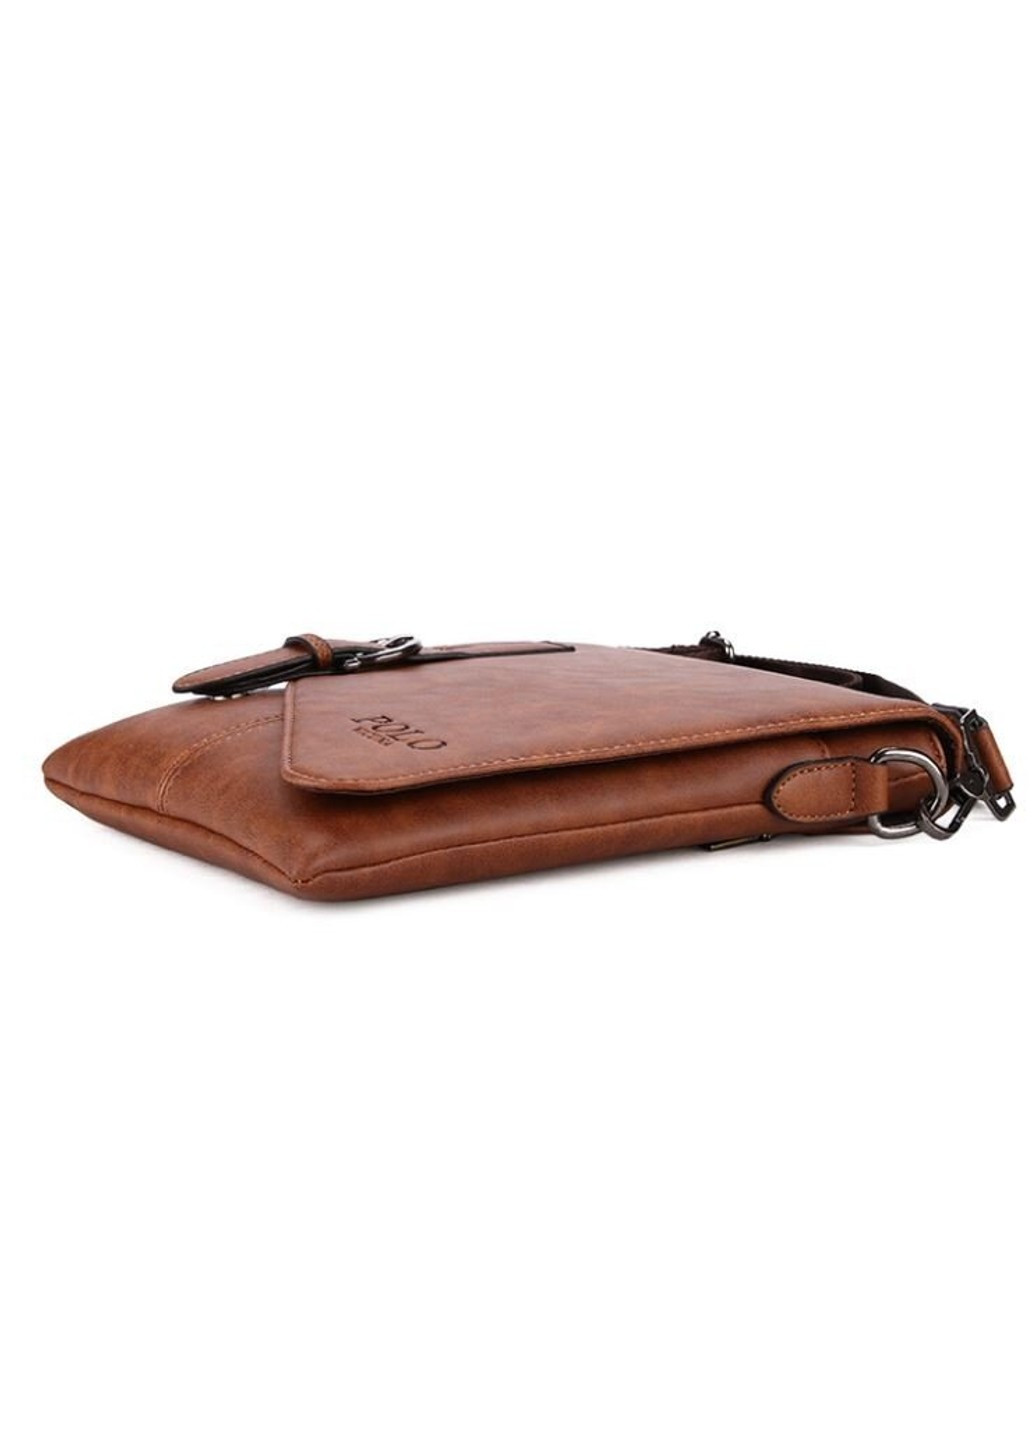 Мужская повседневная коричневая сумка 8838-1 Polo (263360645)